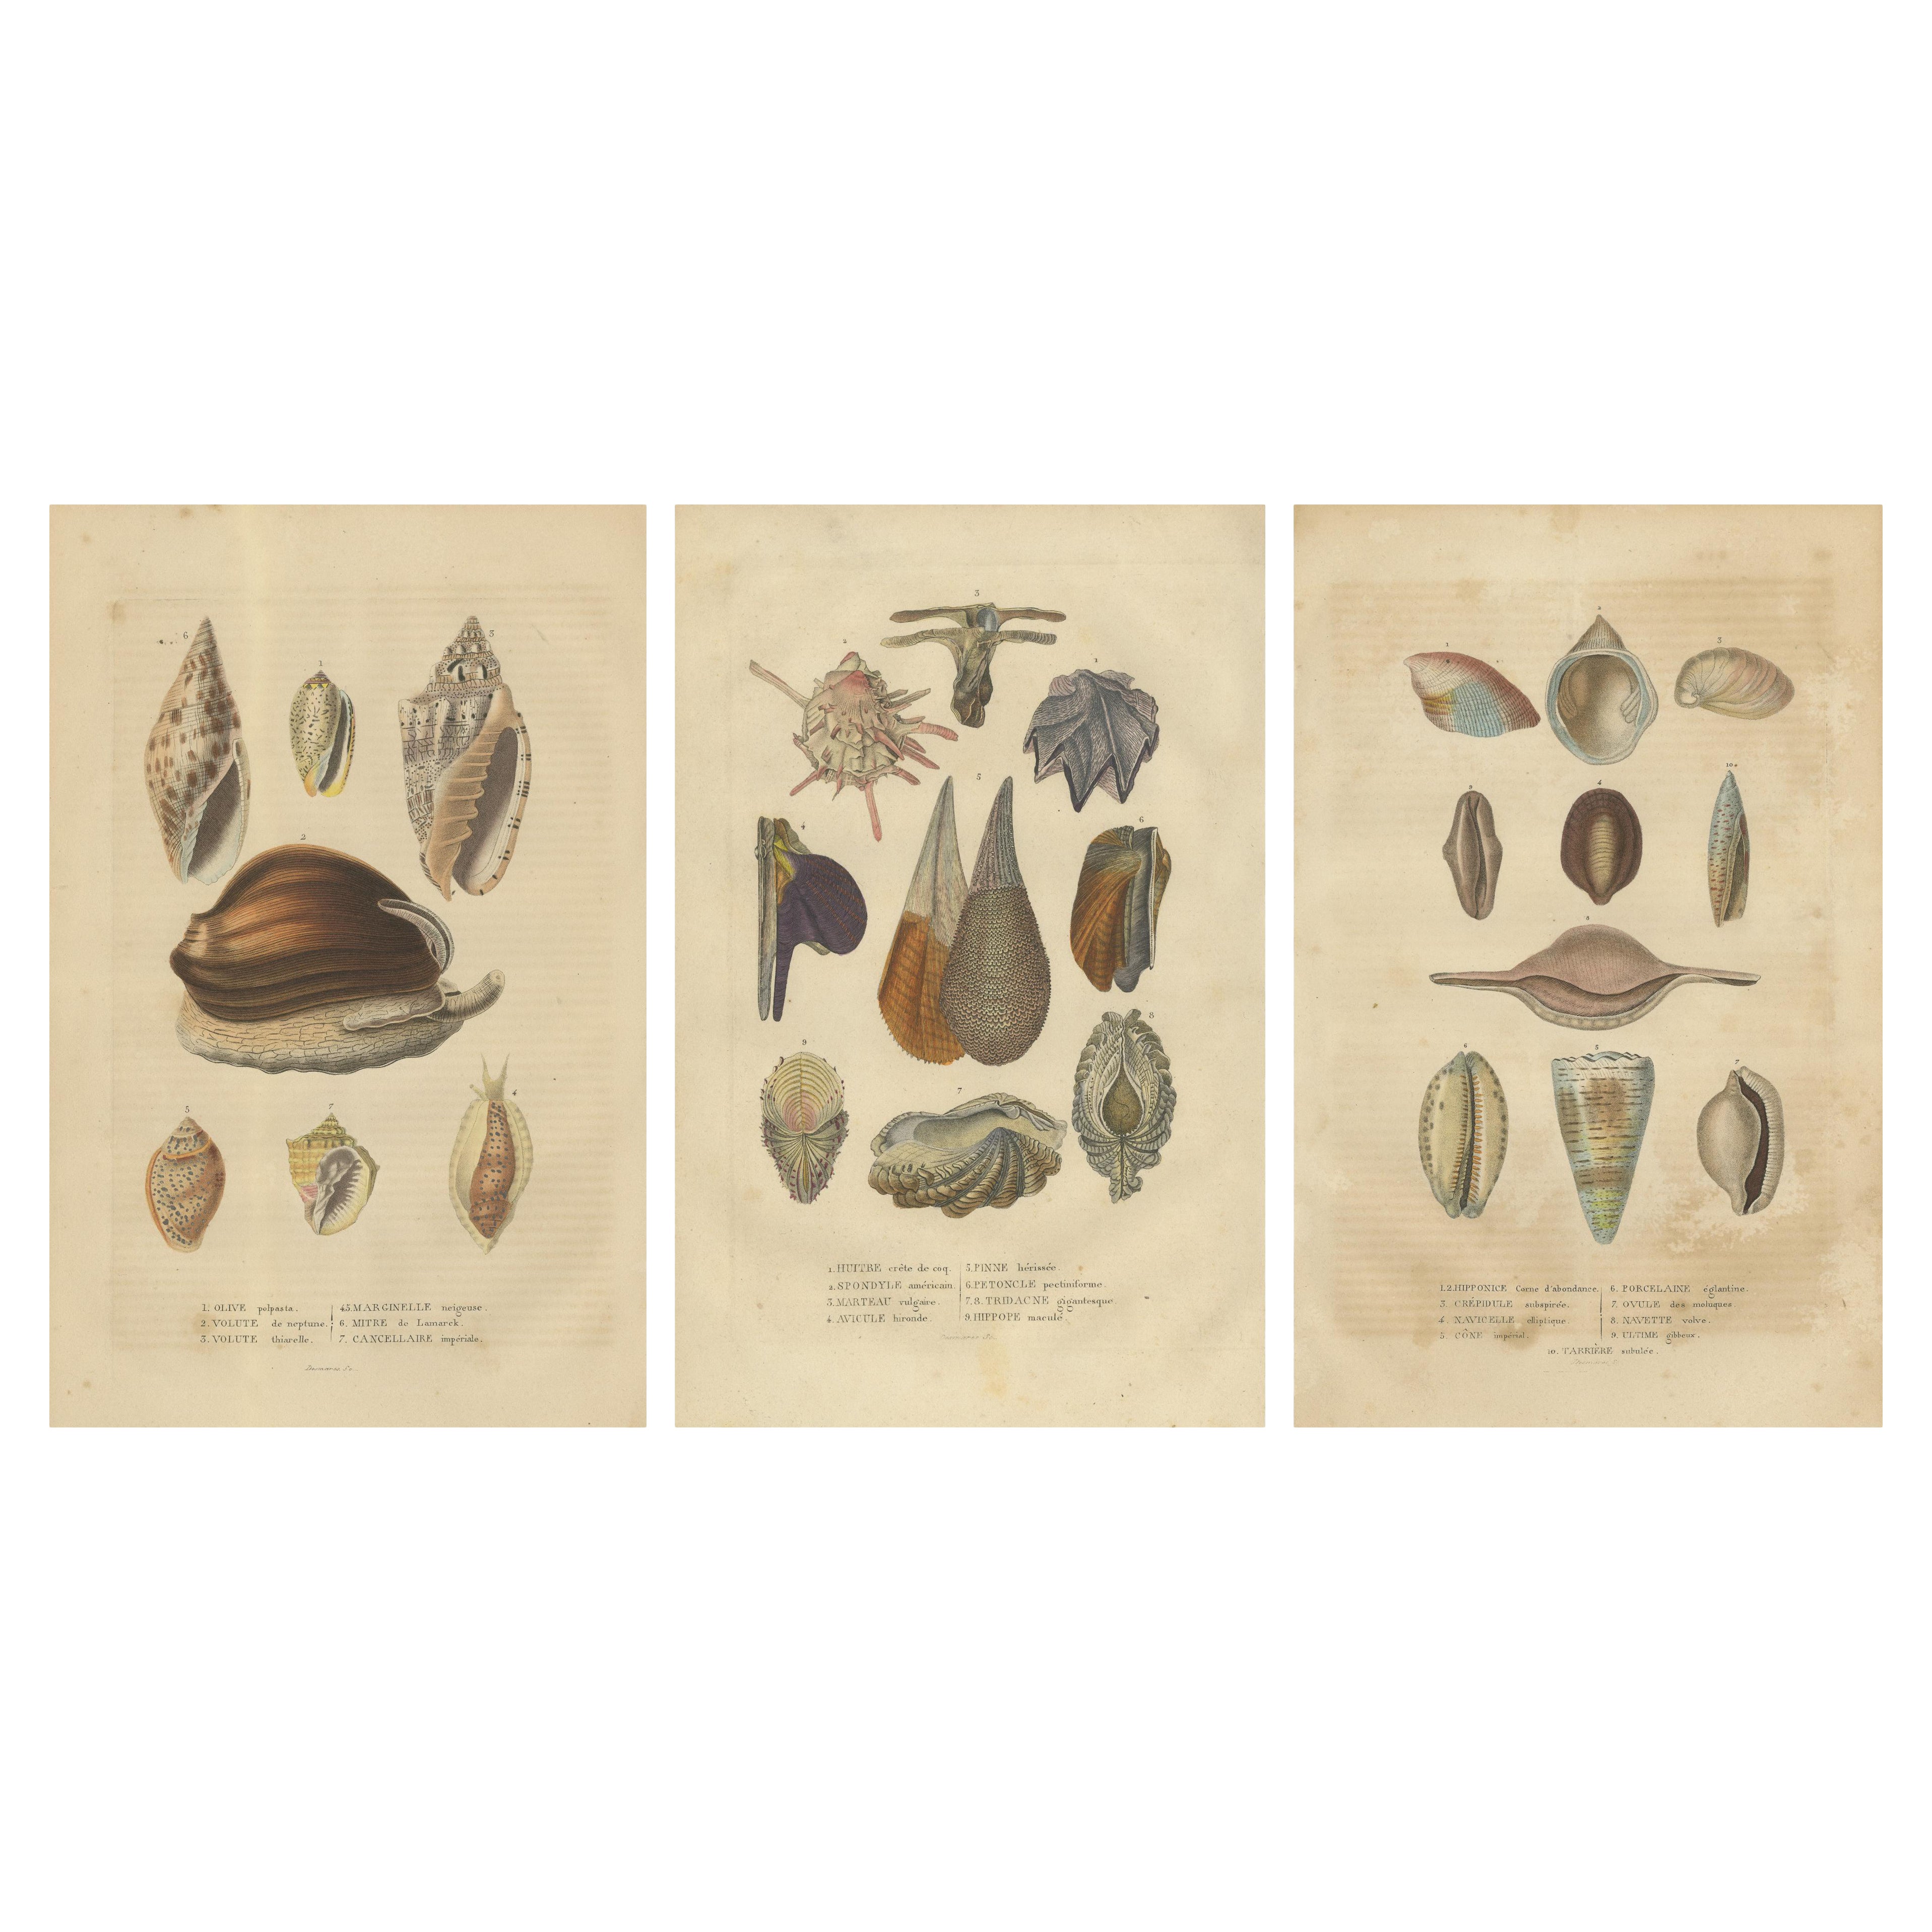 Elegance marine : Une mosaïque de la diversité des mollusques au XIXe siècle, 1845